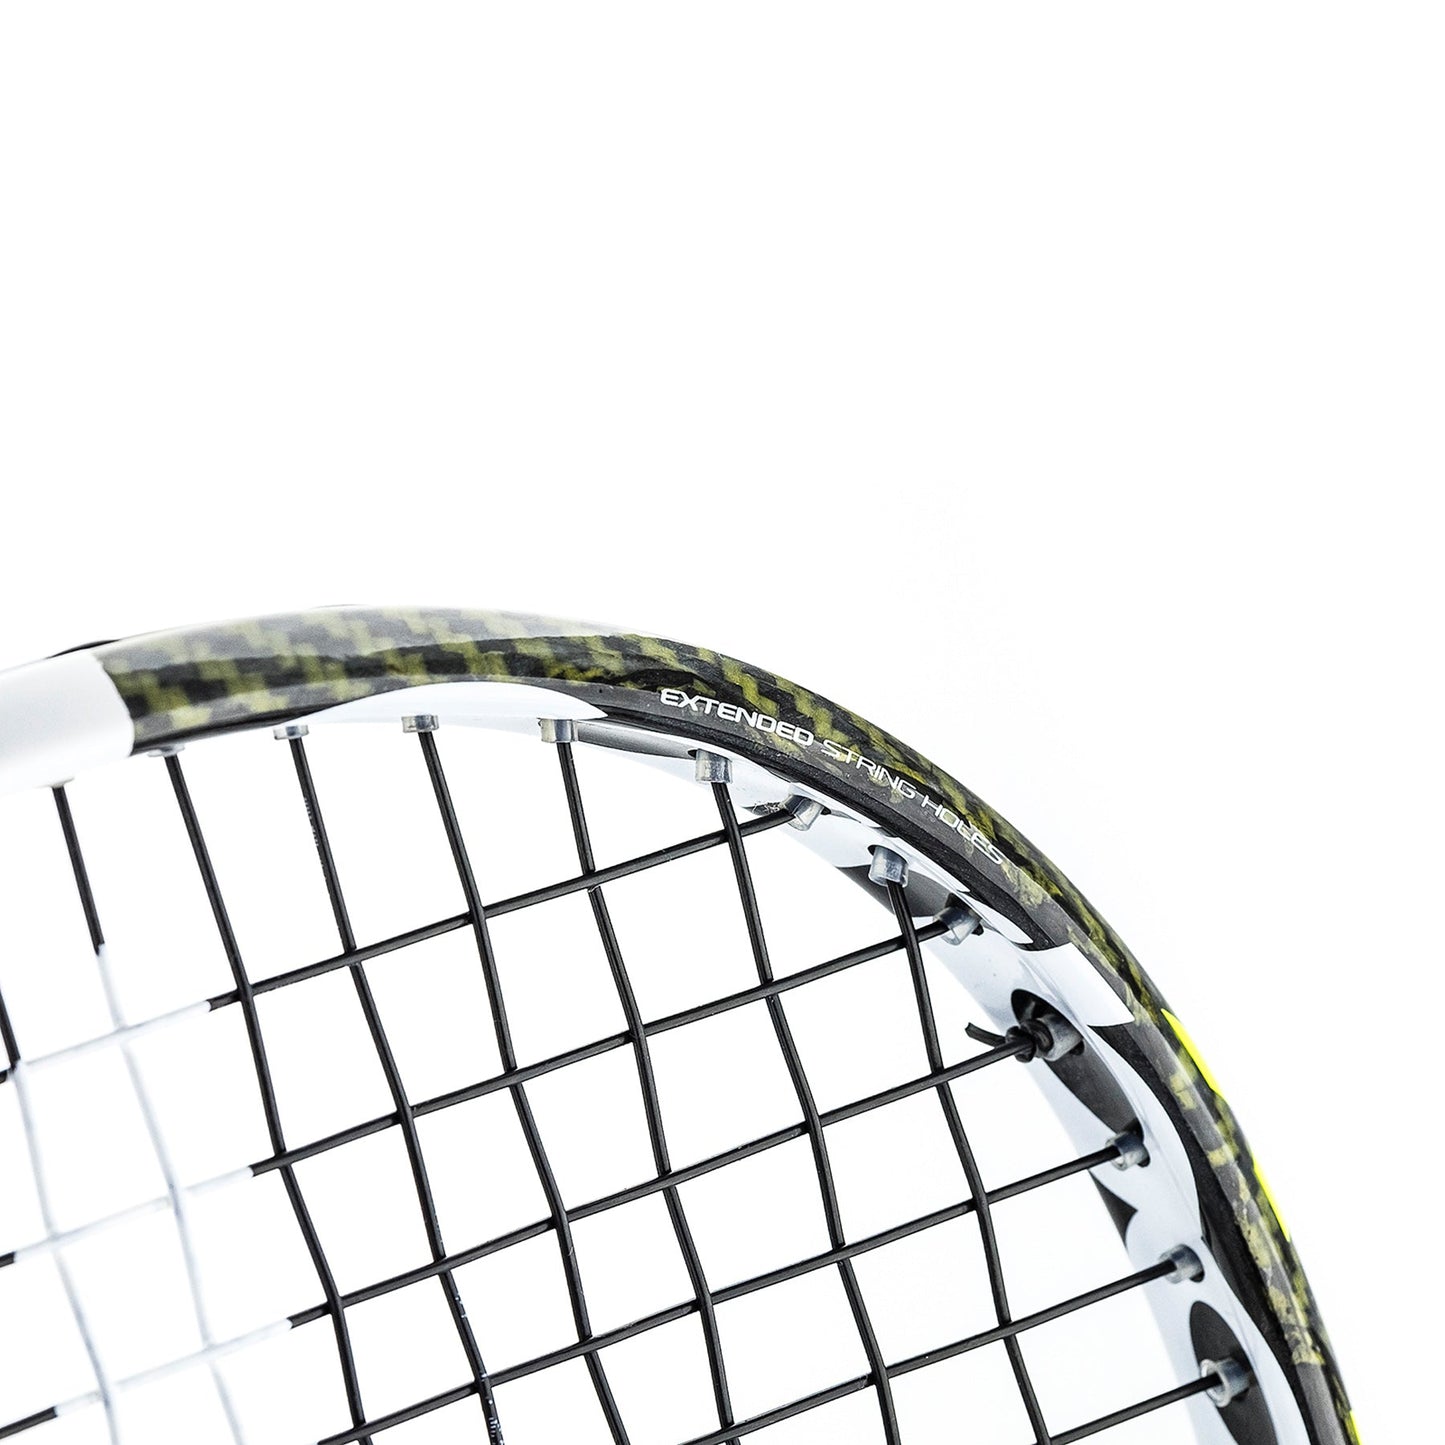 Tecnifibre Carboflex 125 X-Top NS (Nour El Sherbini) Squash rackets Tecnifibre